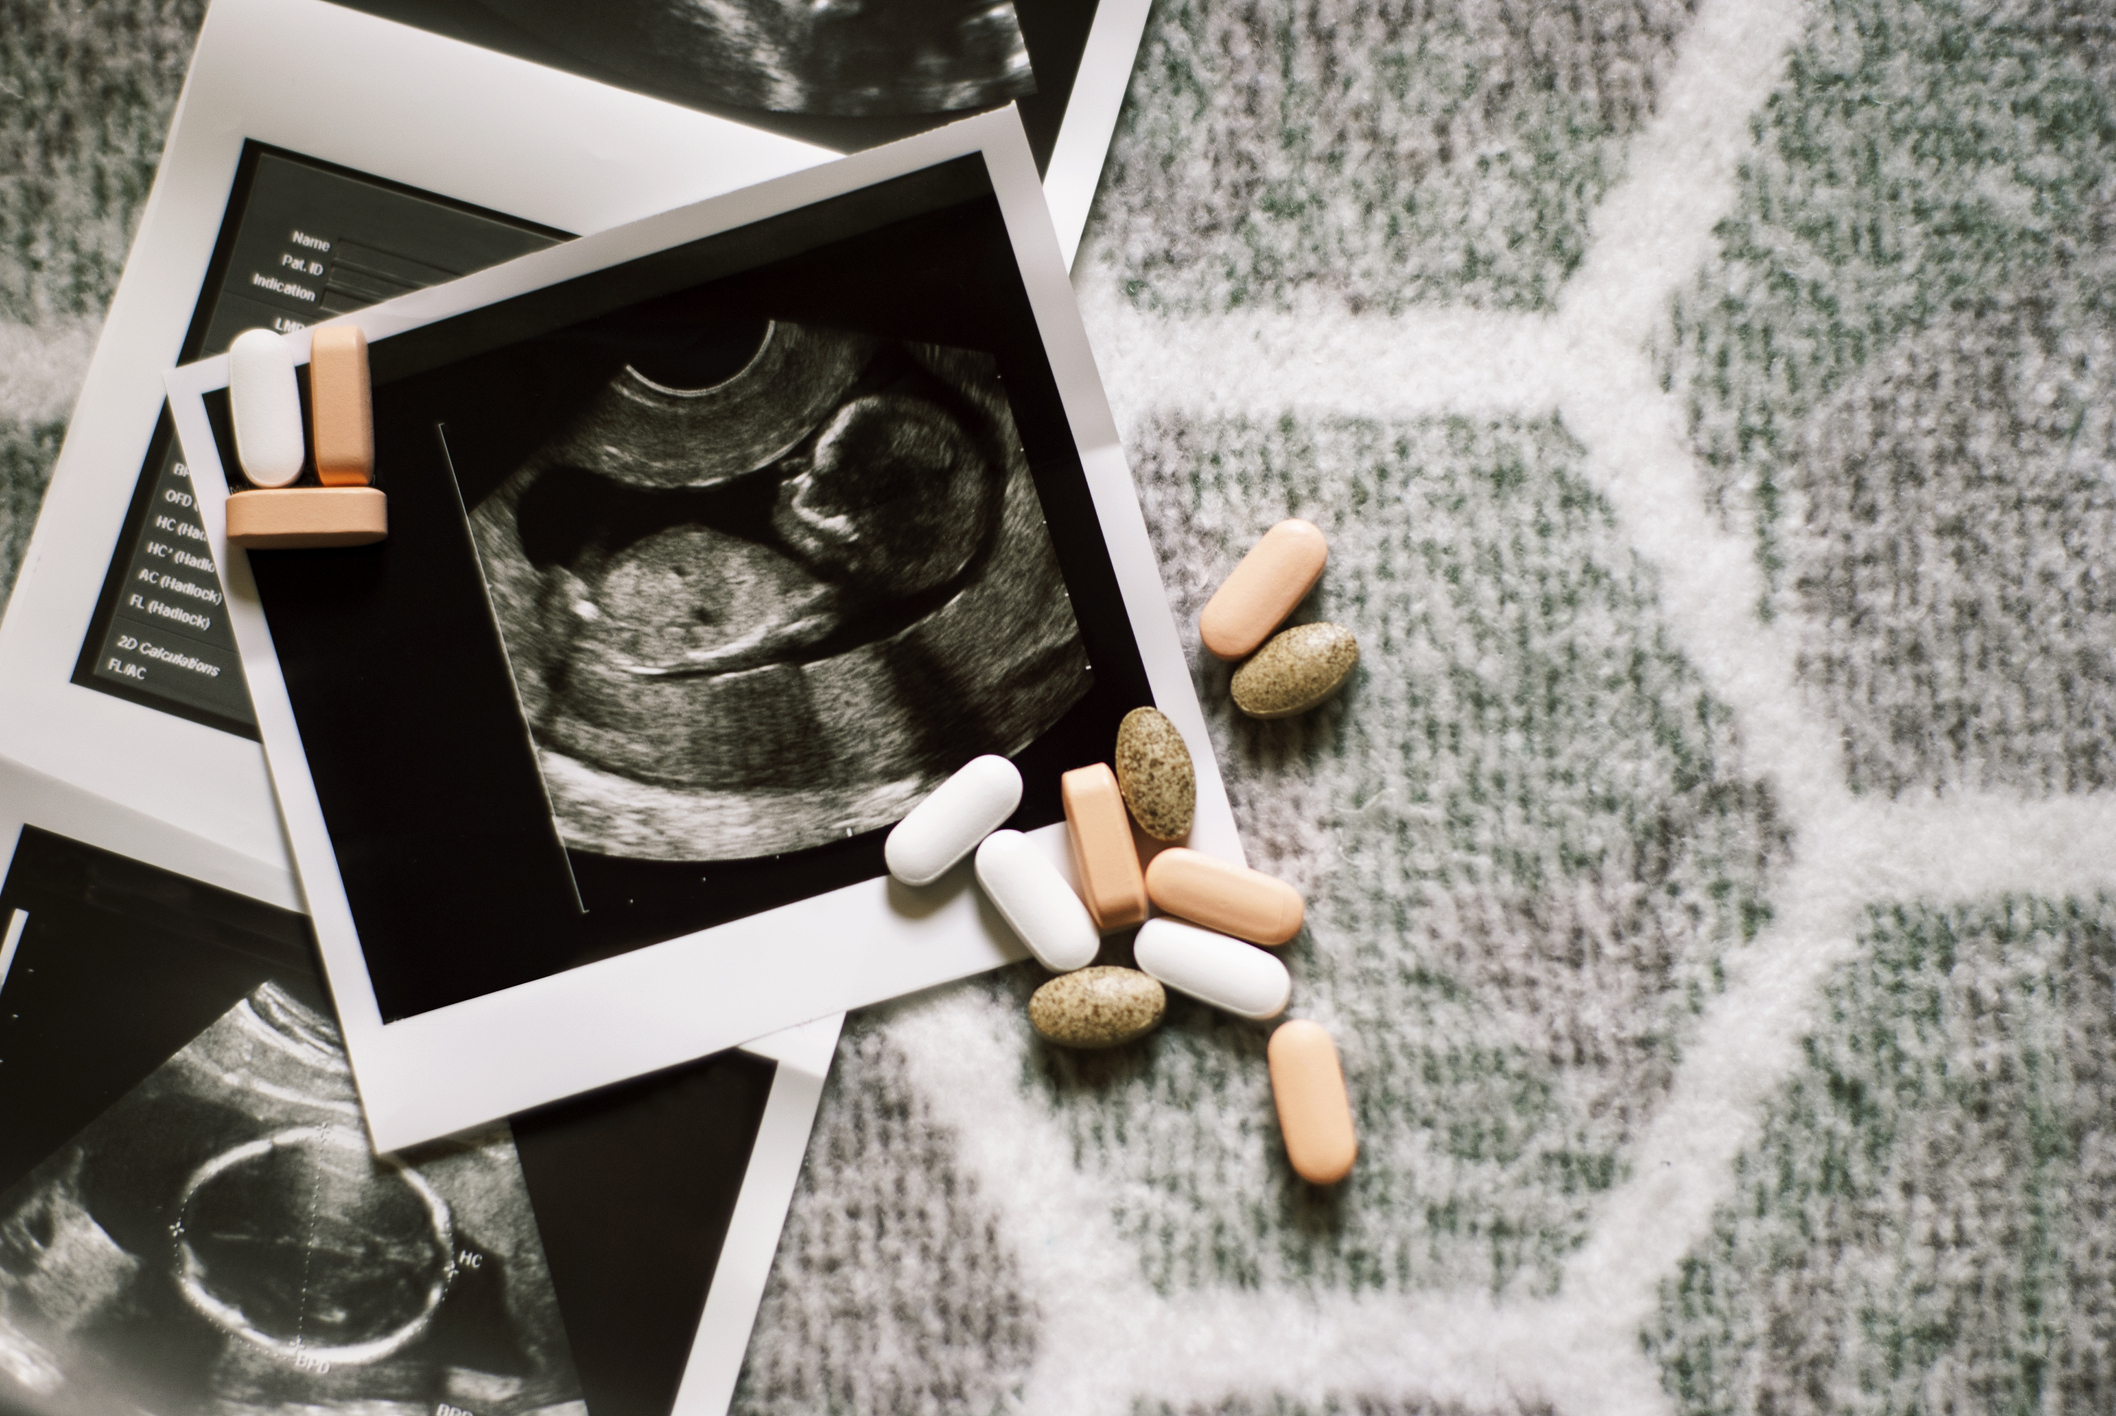 Niektoré lieky užívajúce počas tehotenstva môžu poškodiť vývoj plodu. Zdroj: Getty Images